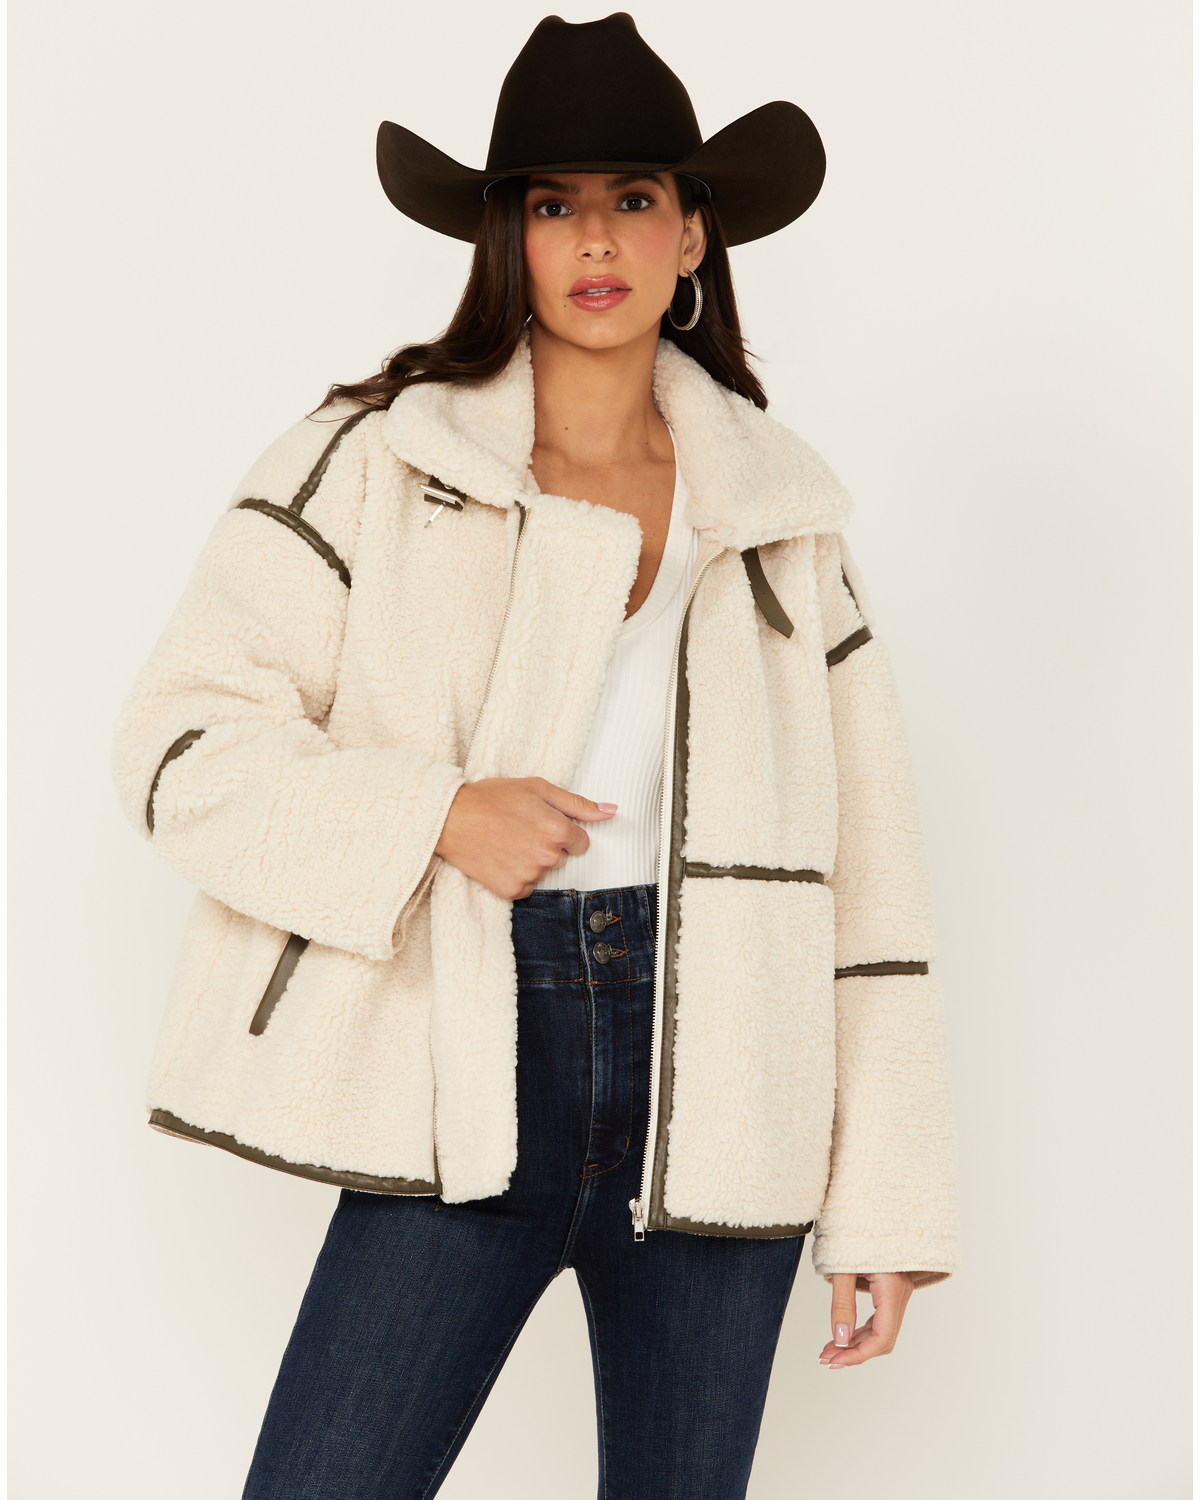 Revel Women's Fleece Zip Up Jacket